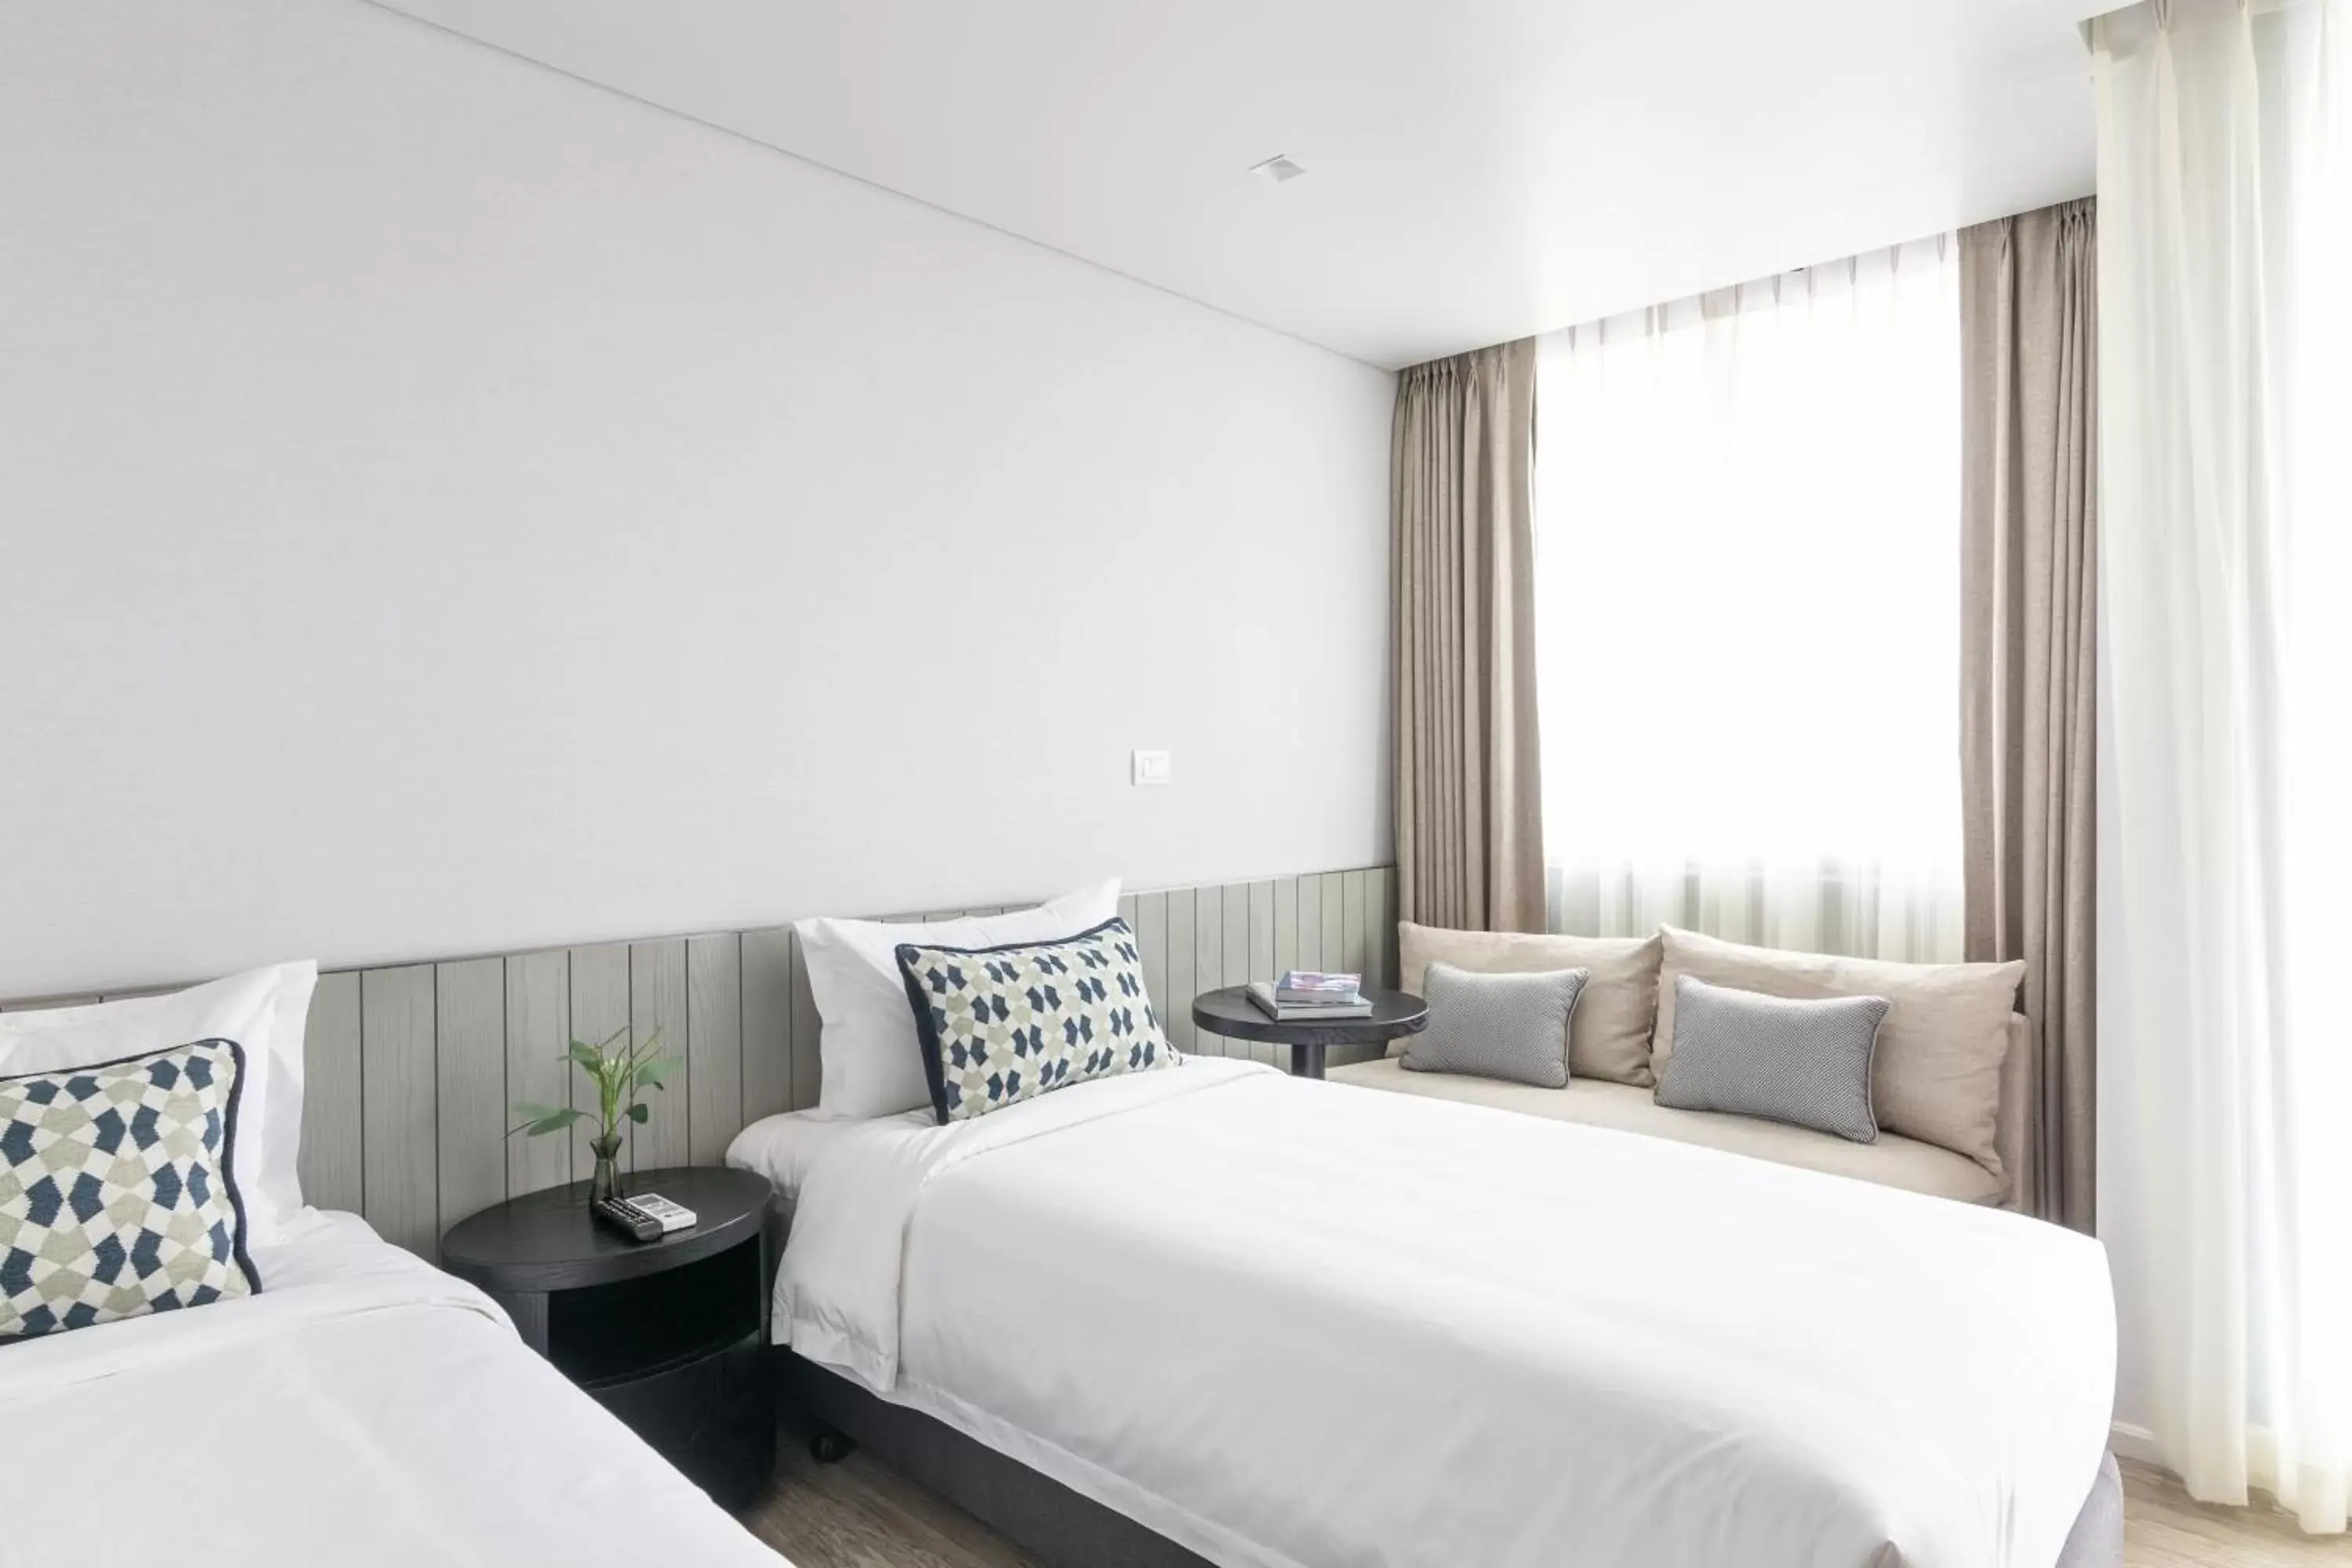 Bed in Apartelle Jatujak Hotel